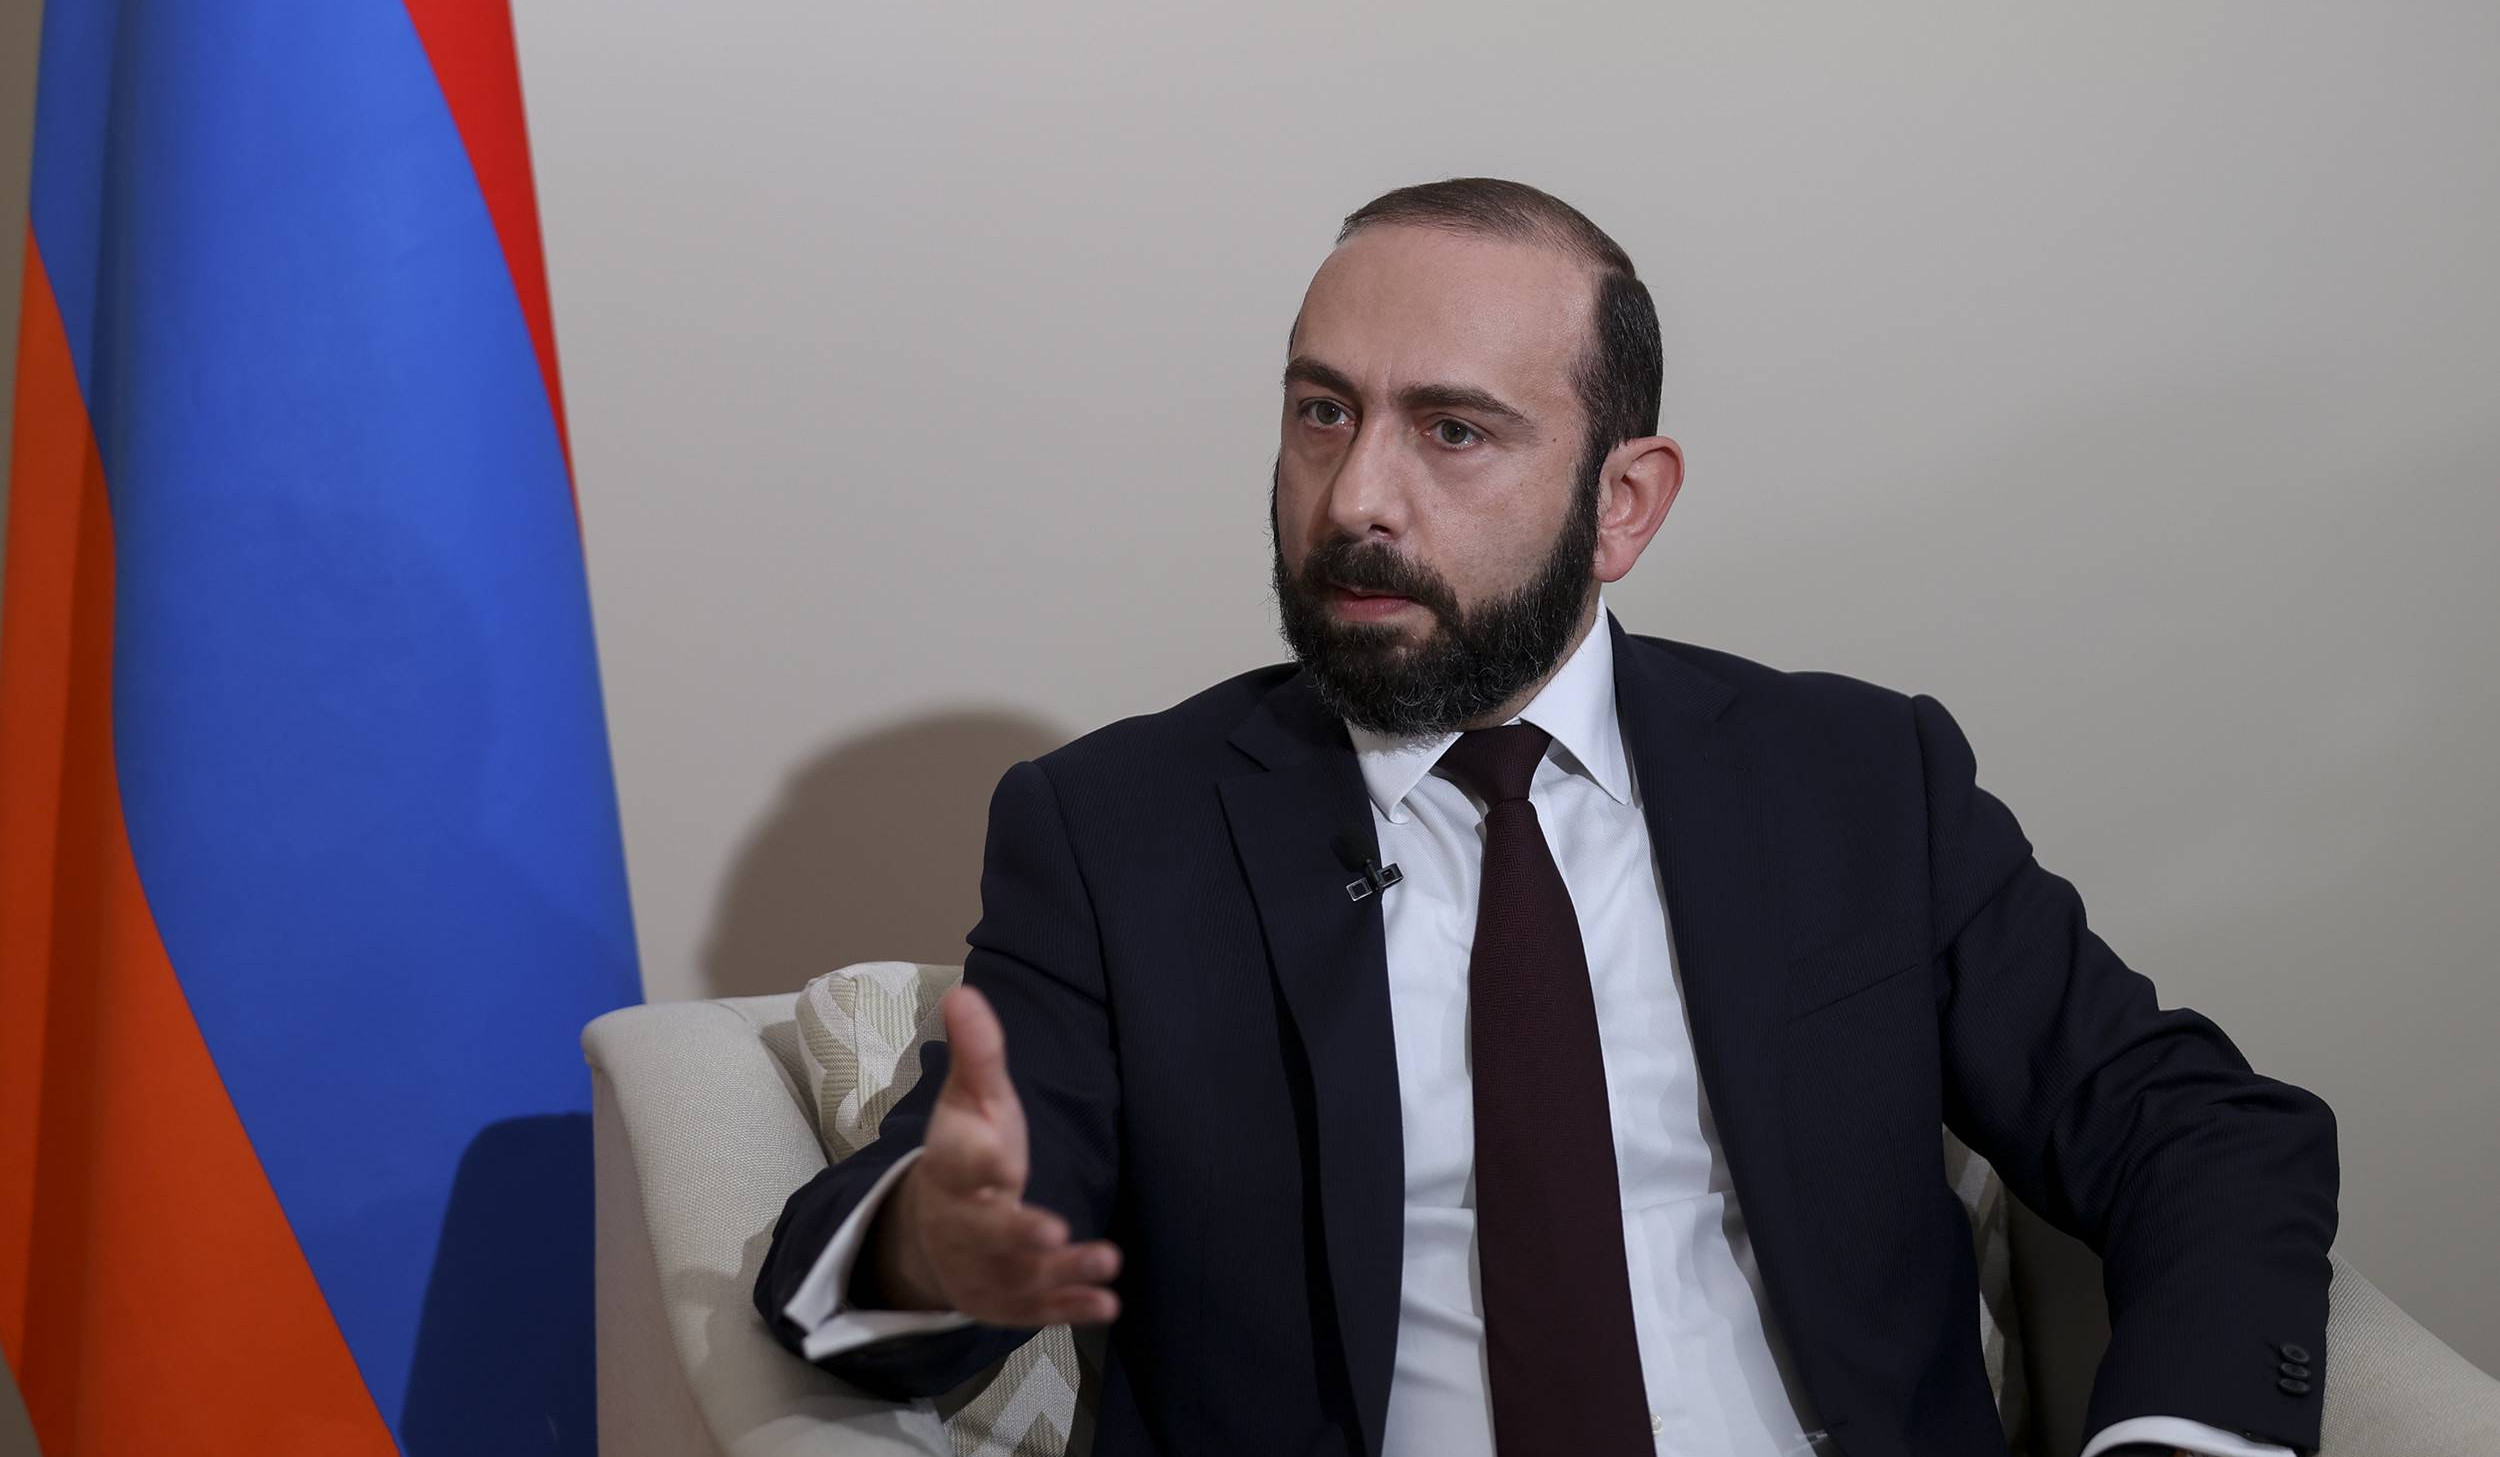 Եթե մենք բացենք Հայաստանի ու Թուրքիայի սահմանը, գործարար կապերն ինքնուրույն կզարգանան. ԱԳ նախարար